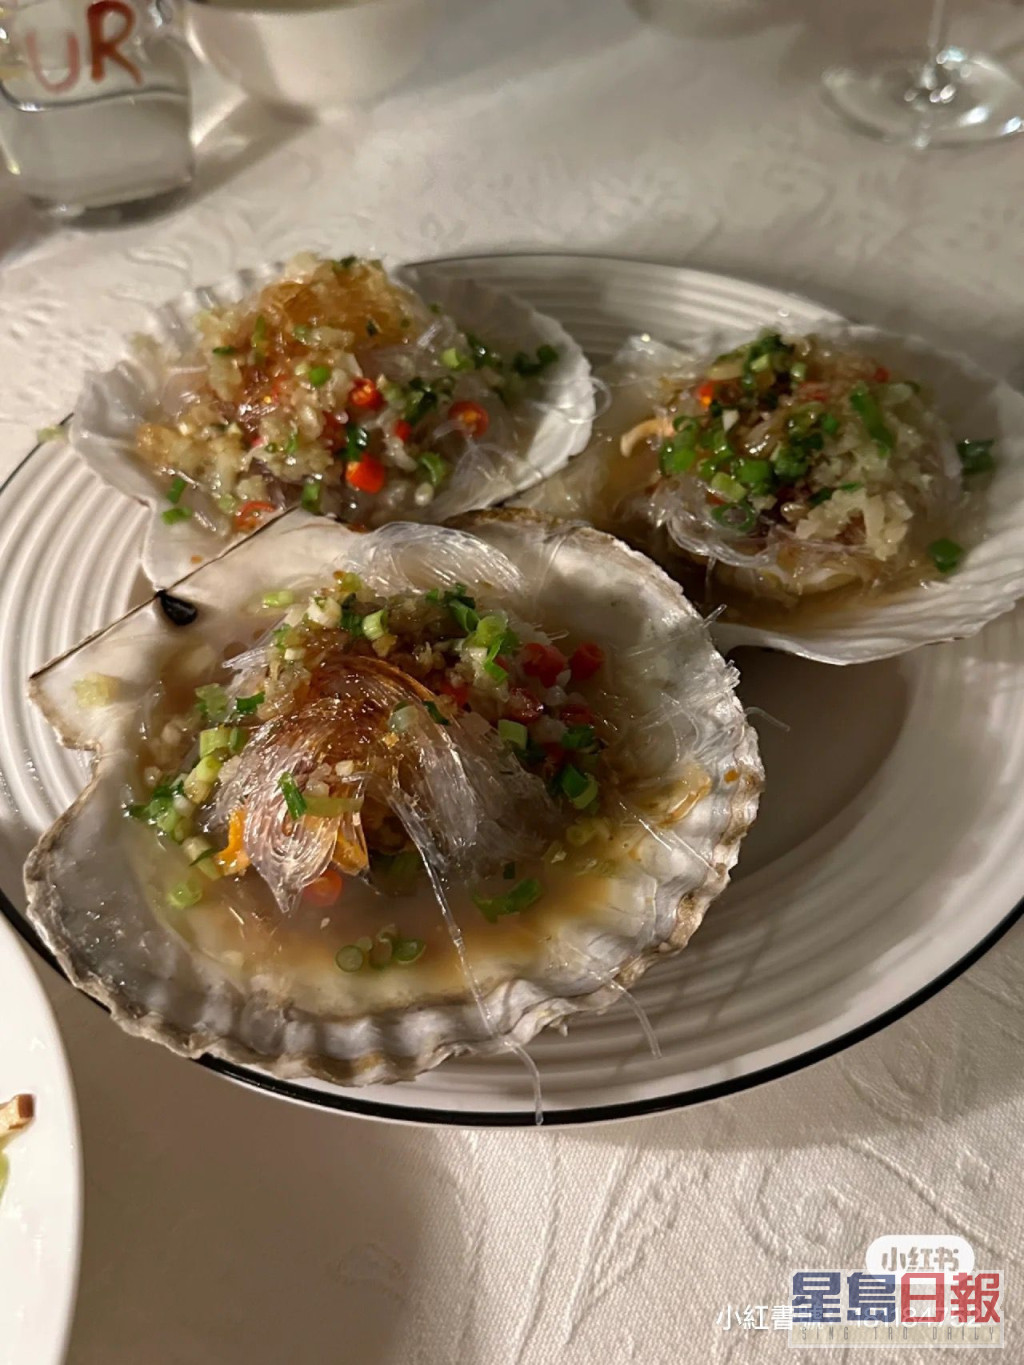 吴千语在家中进行小型海鲜宴。